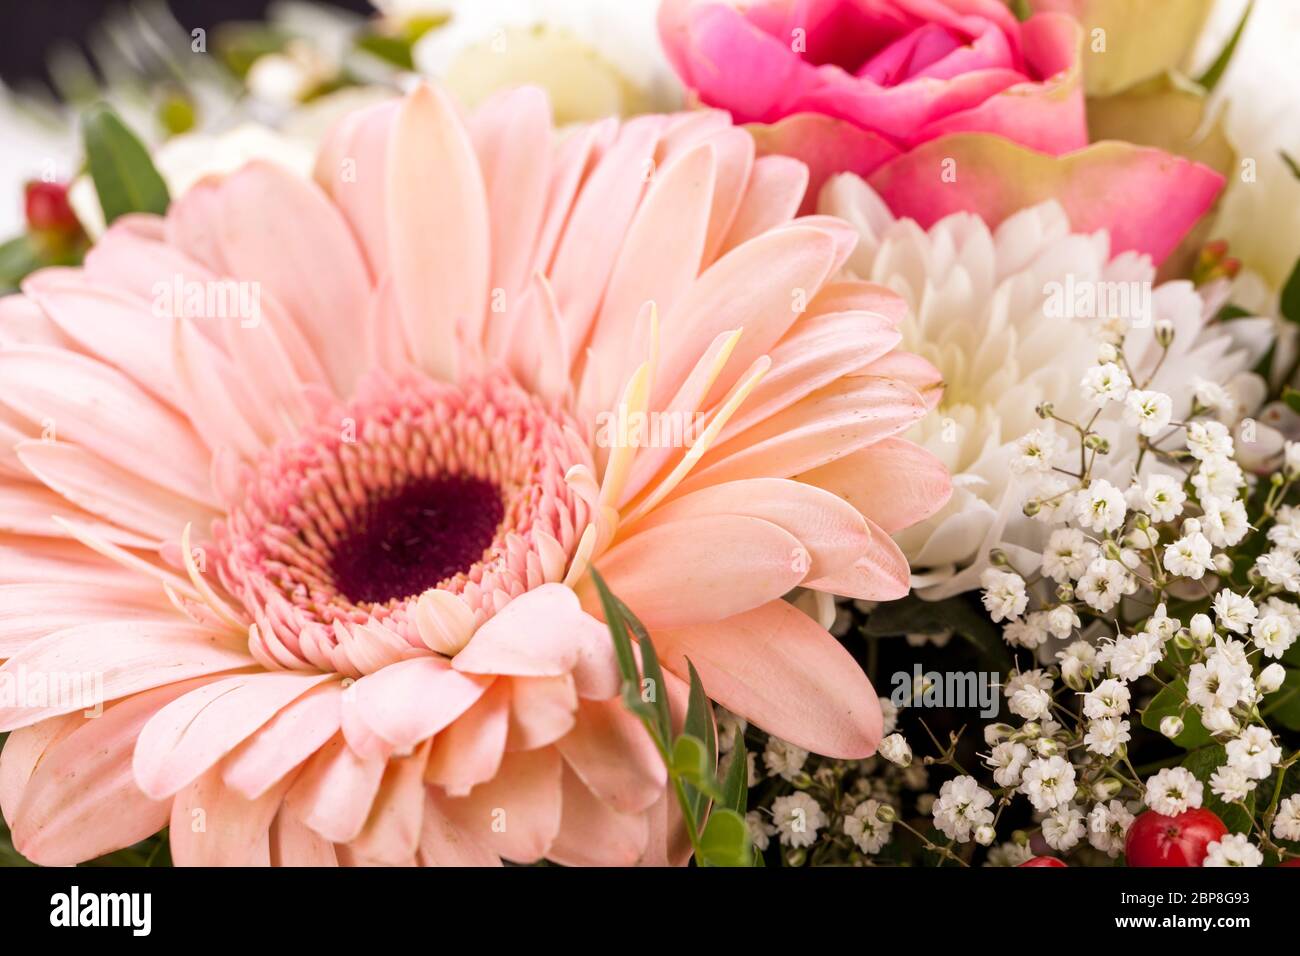 Frische schöne schnittblumen strauss in rosa weiss gerbera rosen grün festlich dekoration Foto Stock